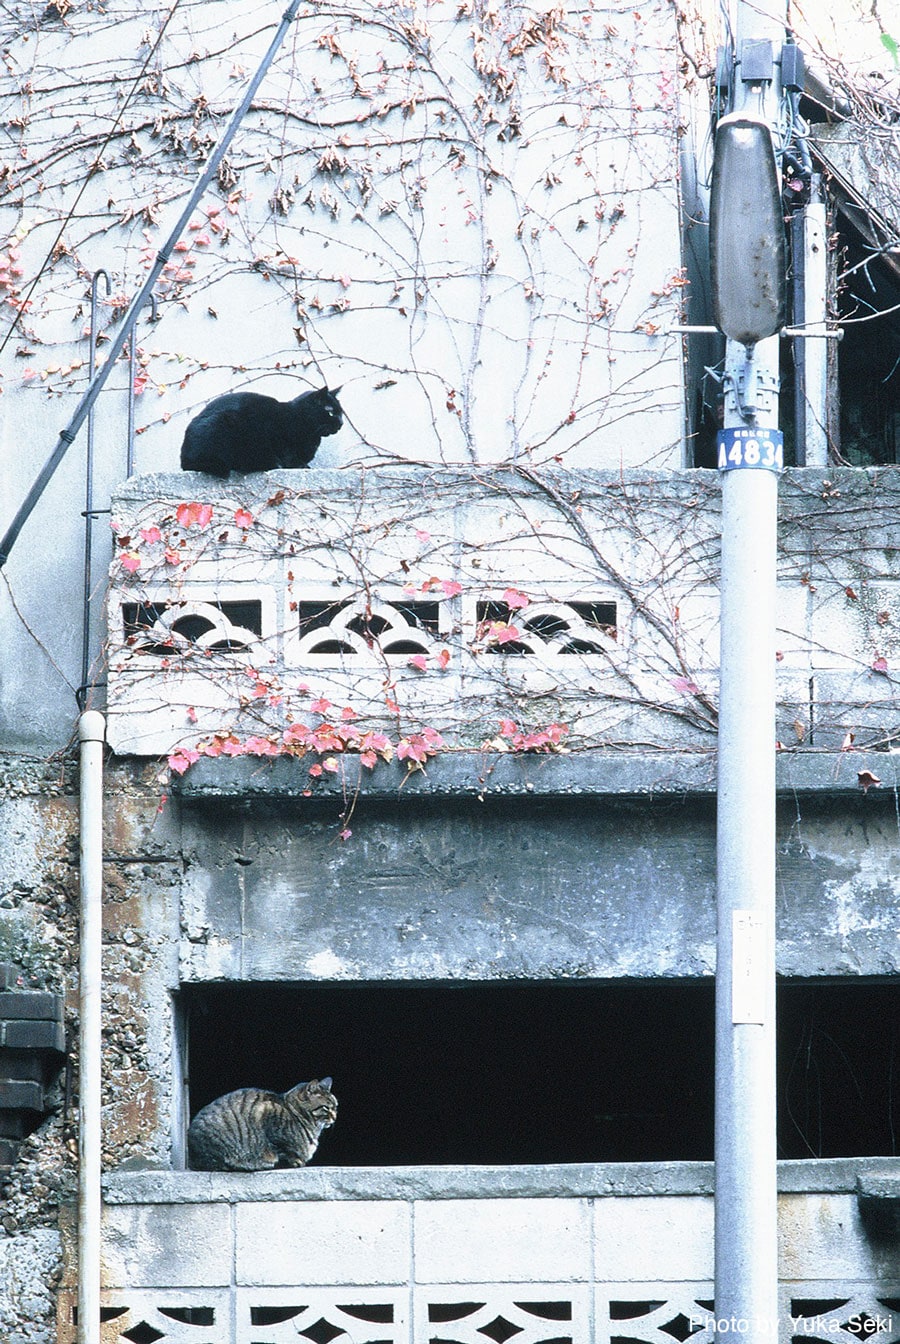 まったく同じフォルムの猫ちゃん。2004年10月、東京・下町で撮影。